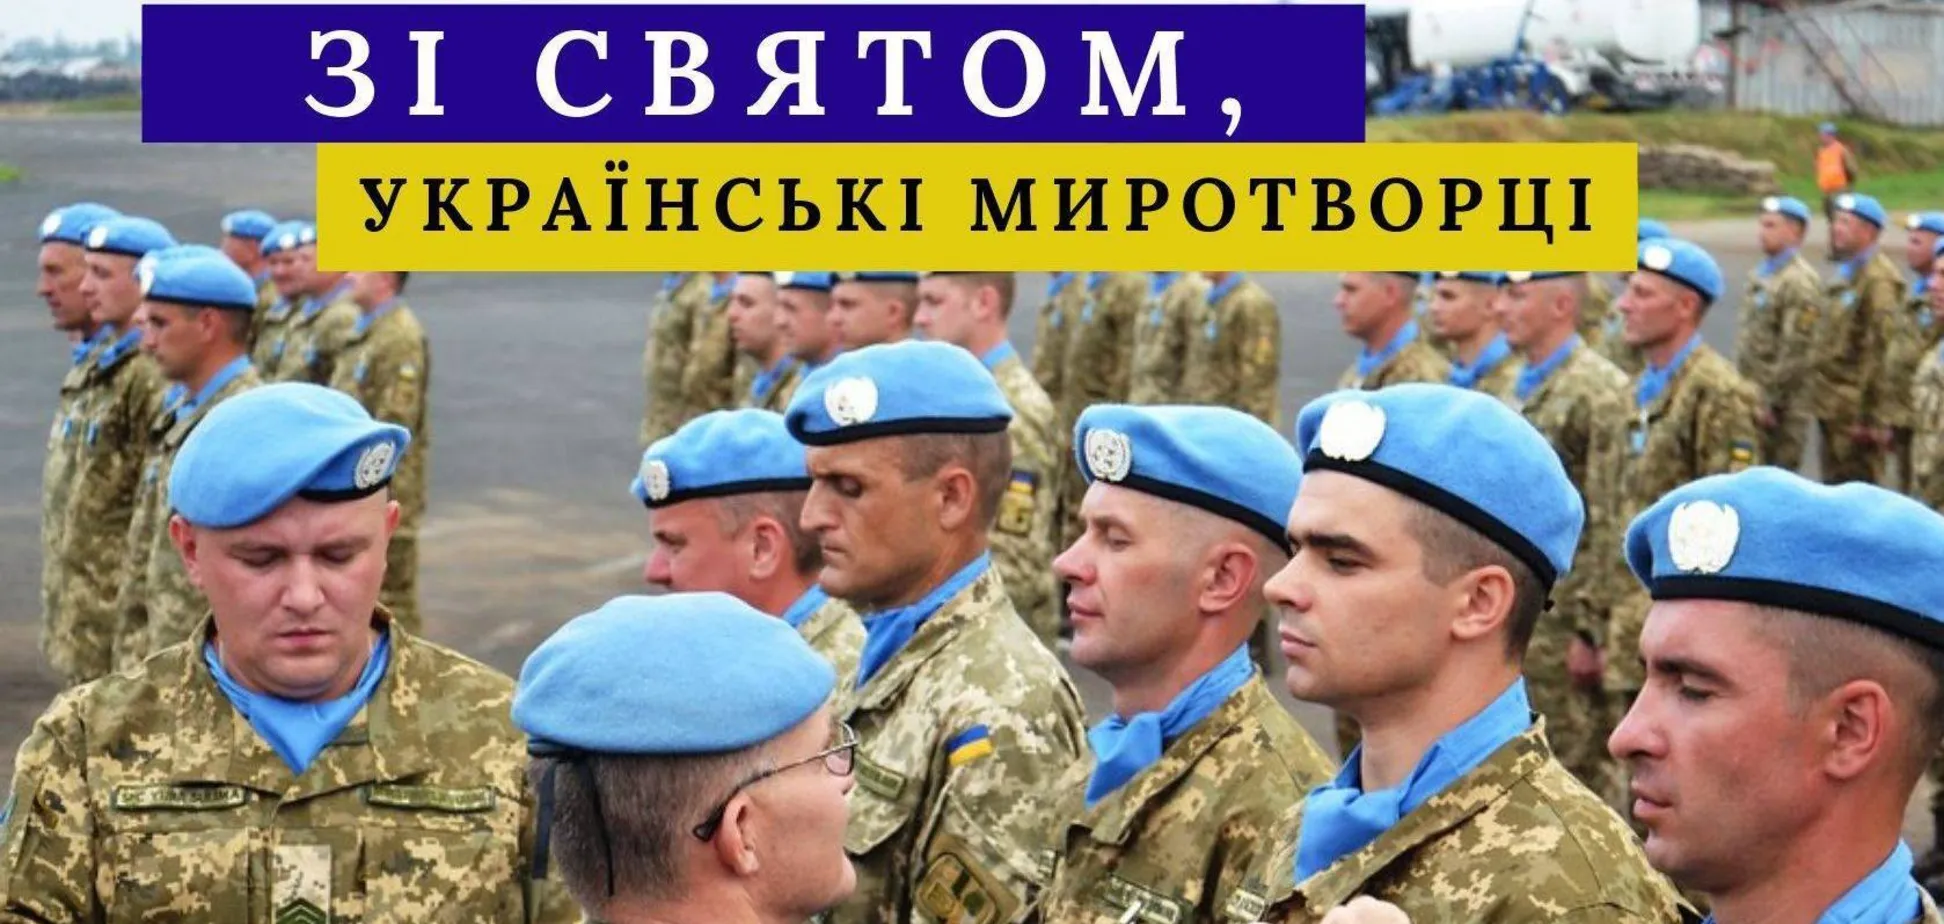 Привітання Головнокомандувача ЗС України з нагоди Дня українських миротворців  